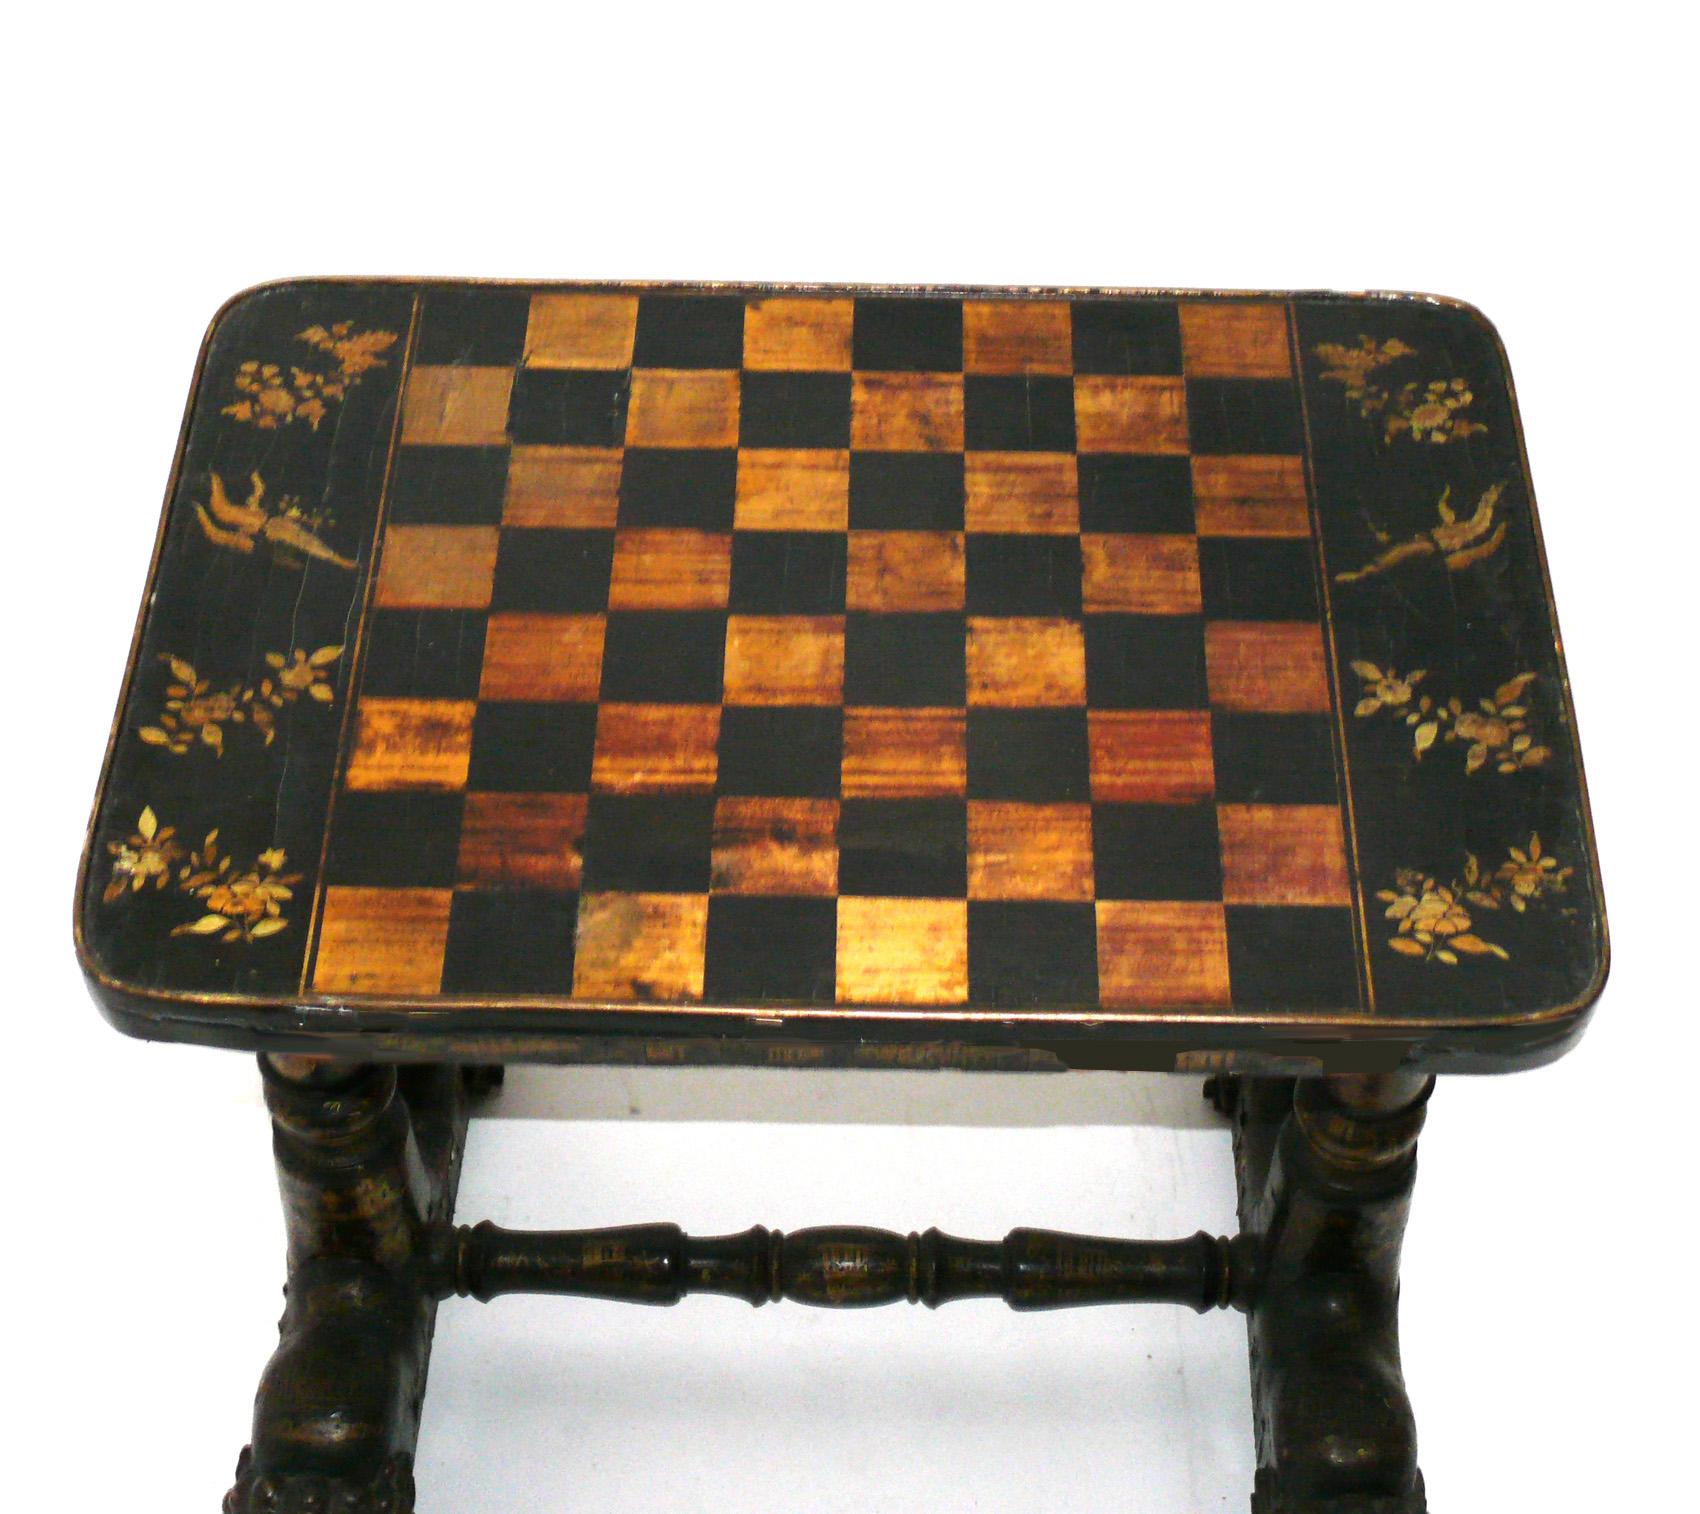 Table à jeux laquée et dorée à la Chinoiserie, probablement chinoise, au moins vers les années 1940, peut-être beaucoup plus tôt. Conserve la chaude patine d'origine. De taille polyvalente, elle peut être utilisée comme table de jeu, table de lampe,